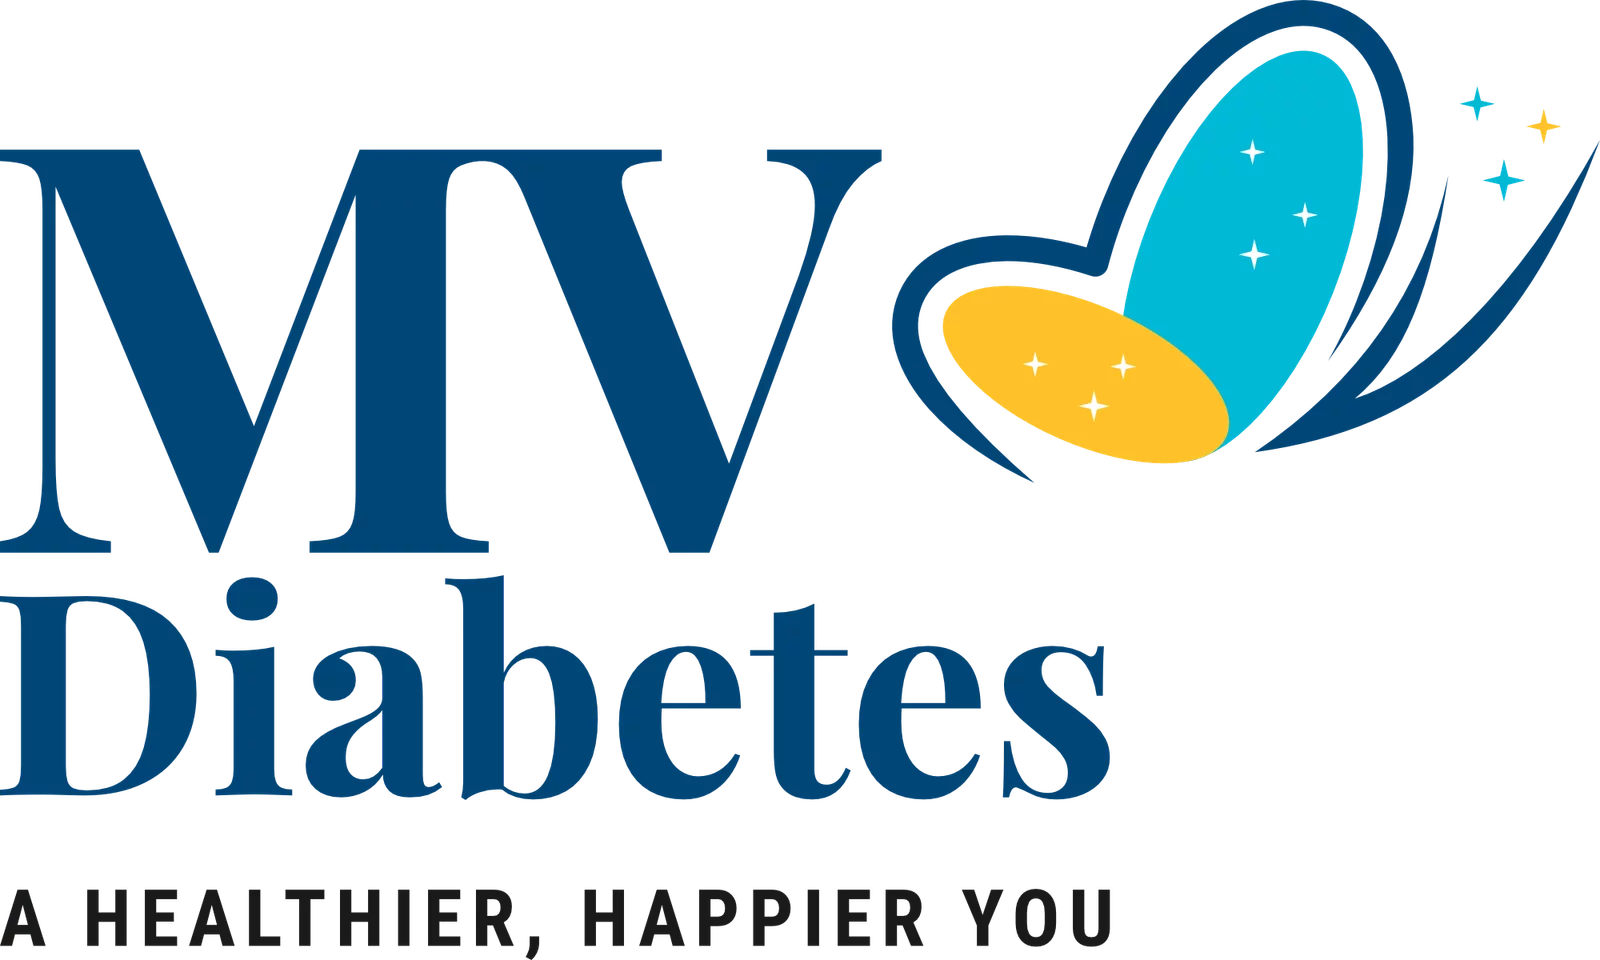 MV Diabetes Logo